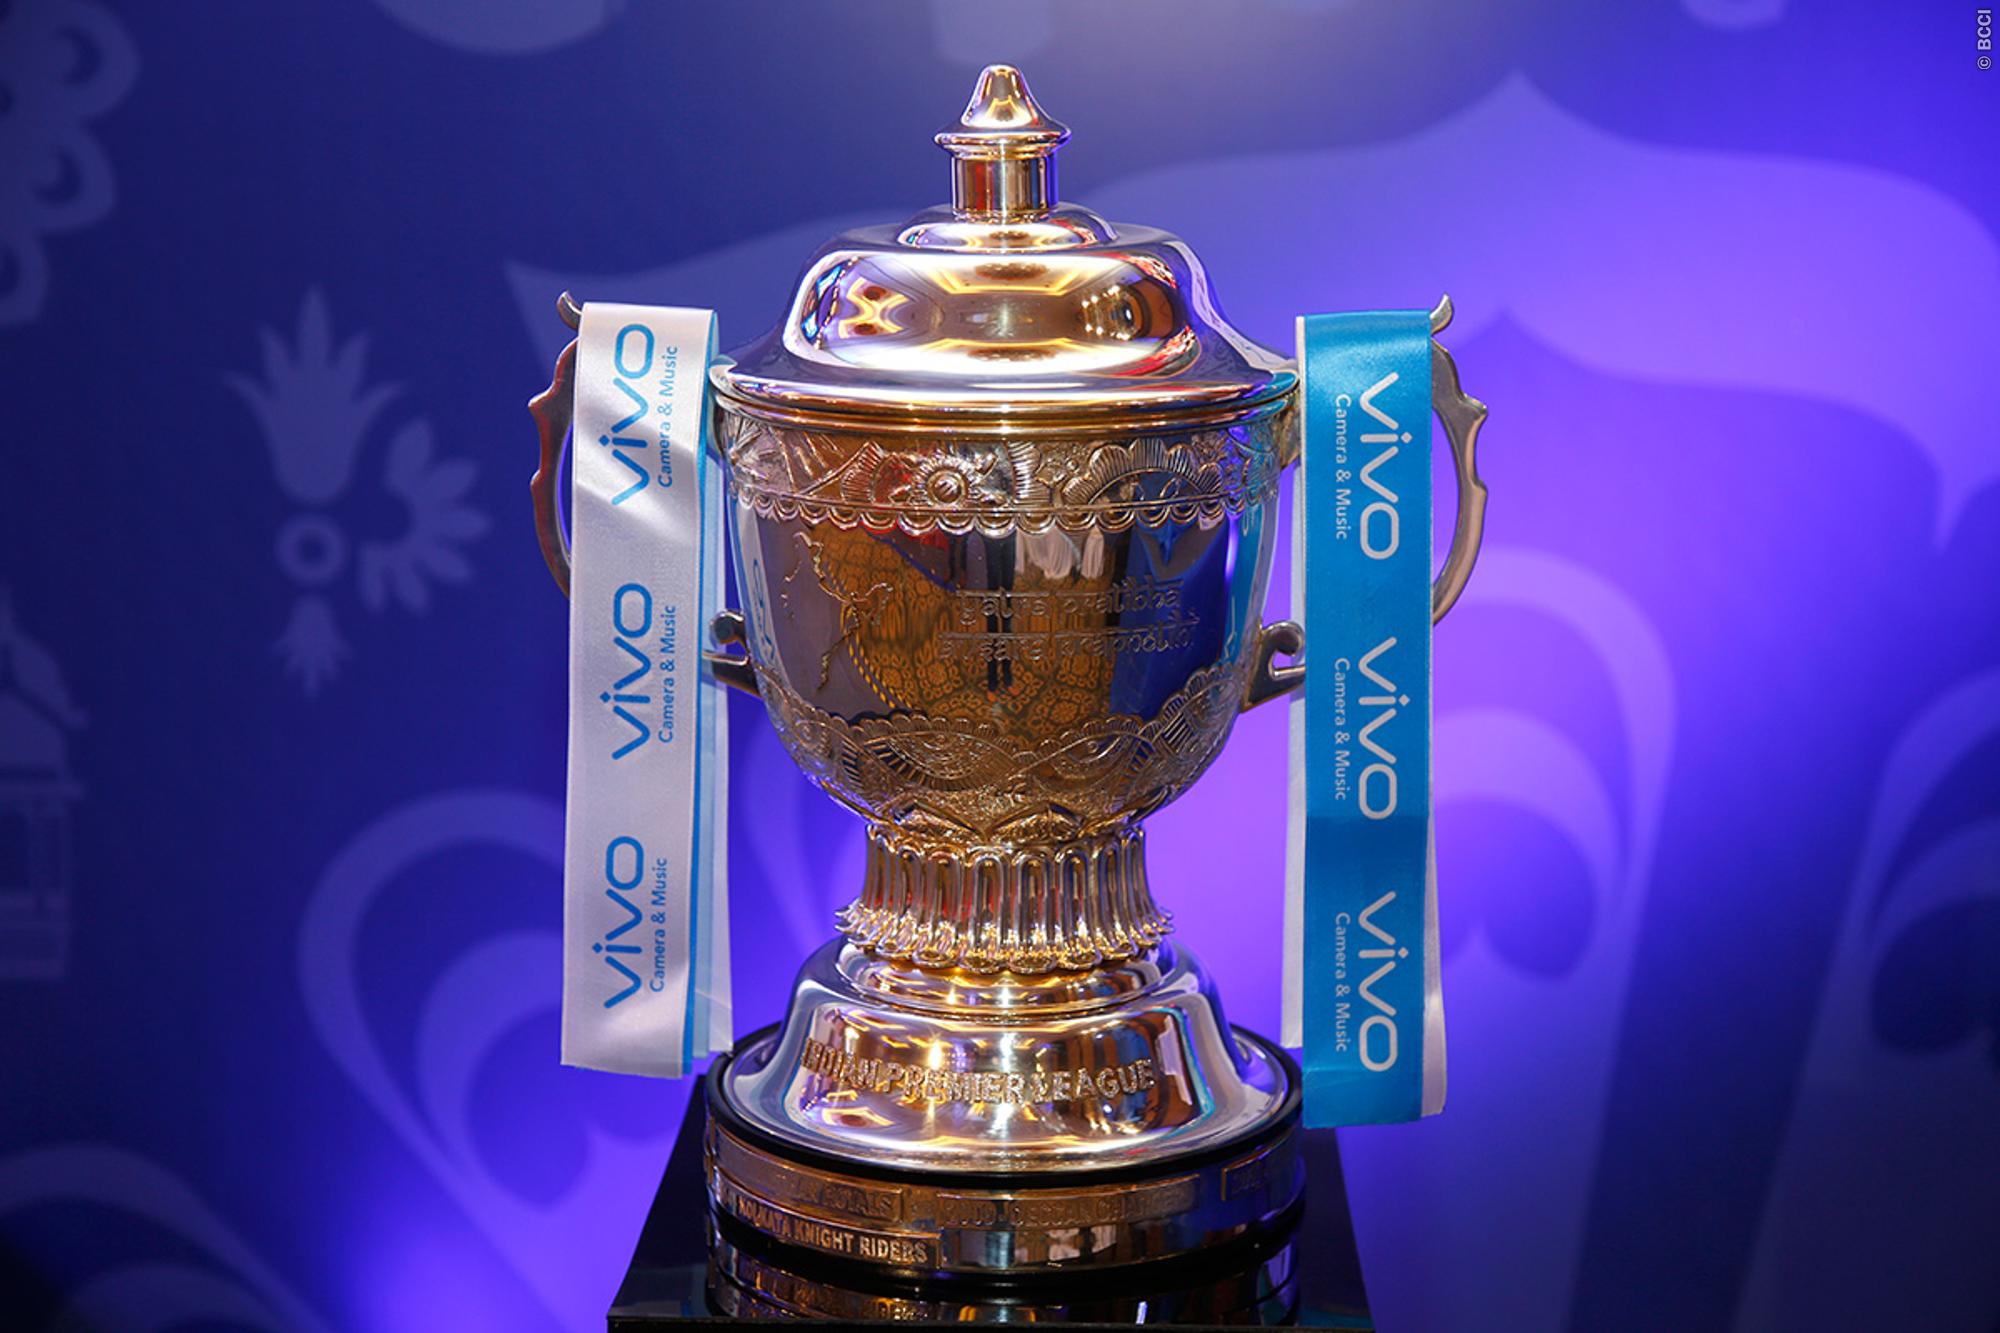 Vivo is IPL's trophy sponsor.